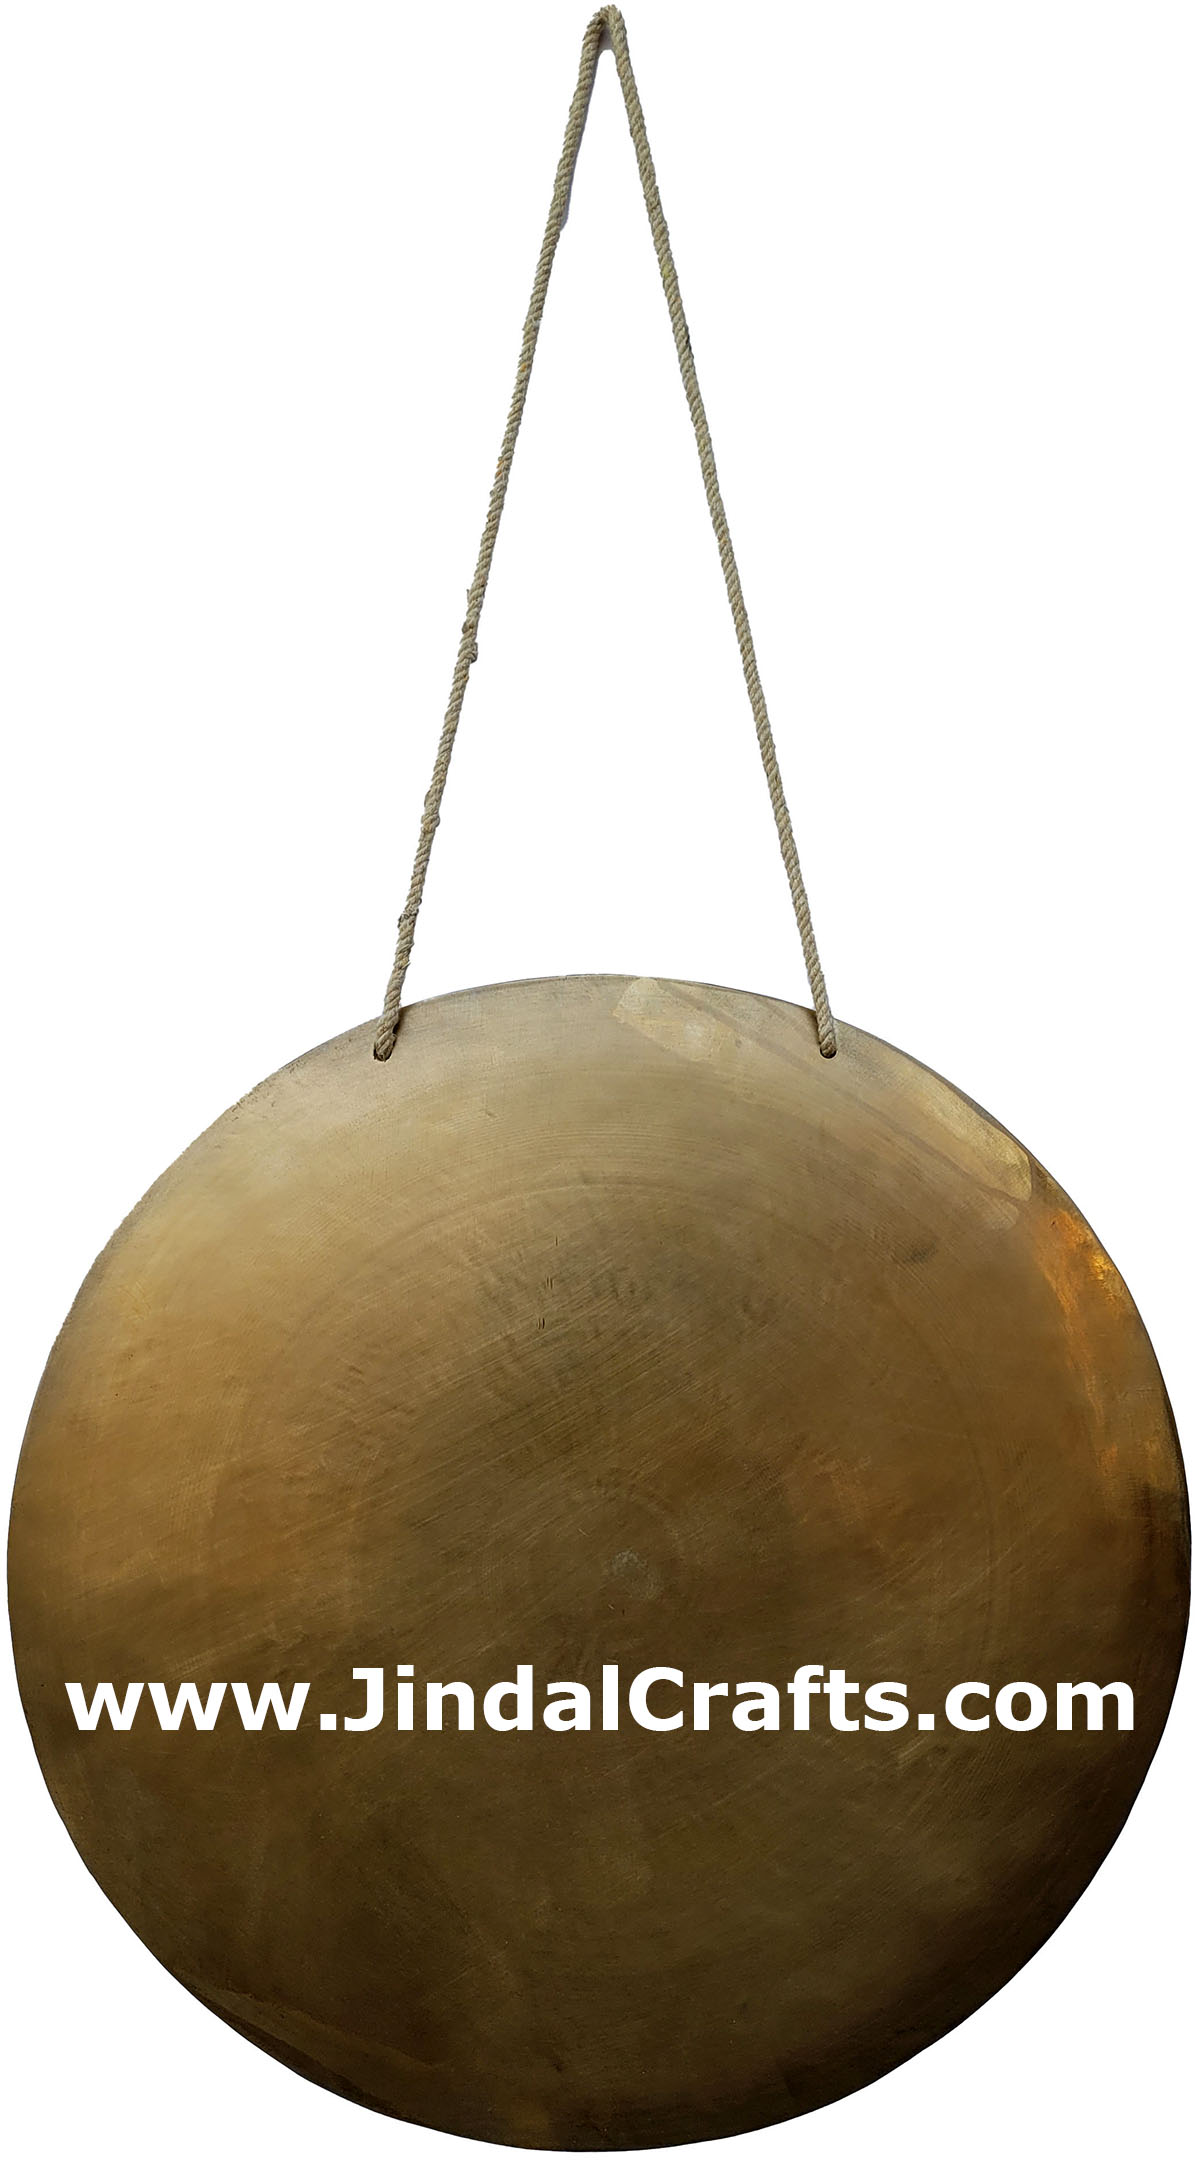 Hand Beaten Gong Bronze Bell India Buddhist Handicrafts